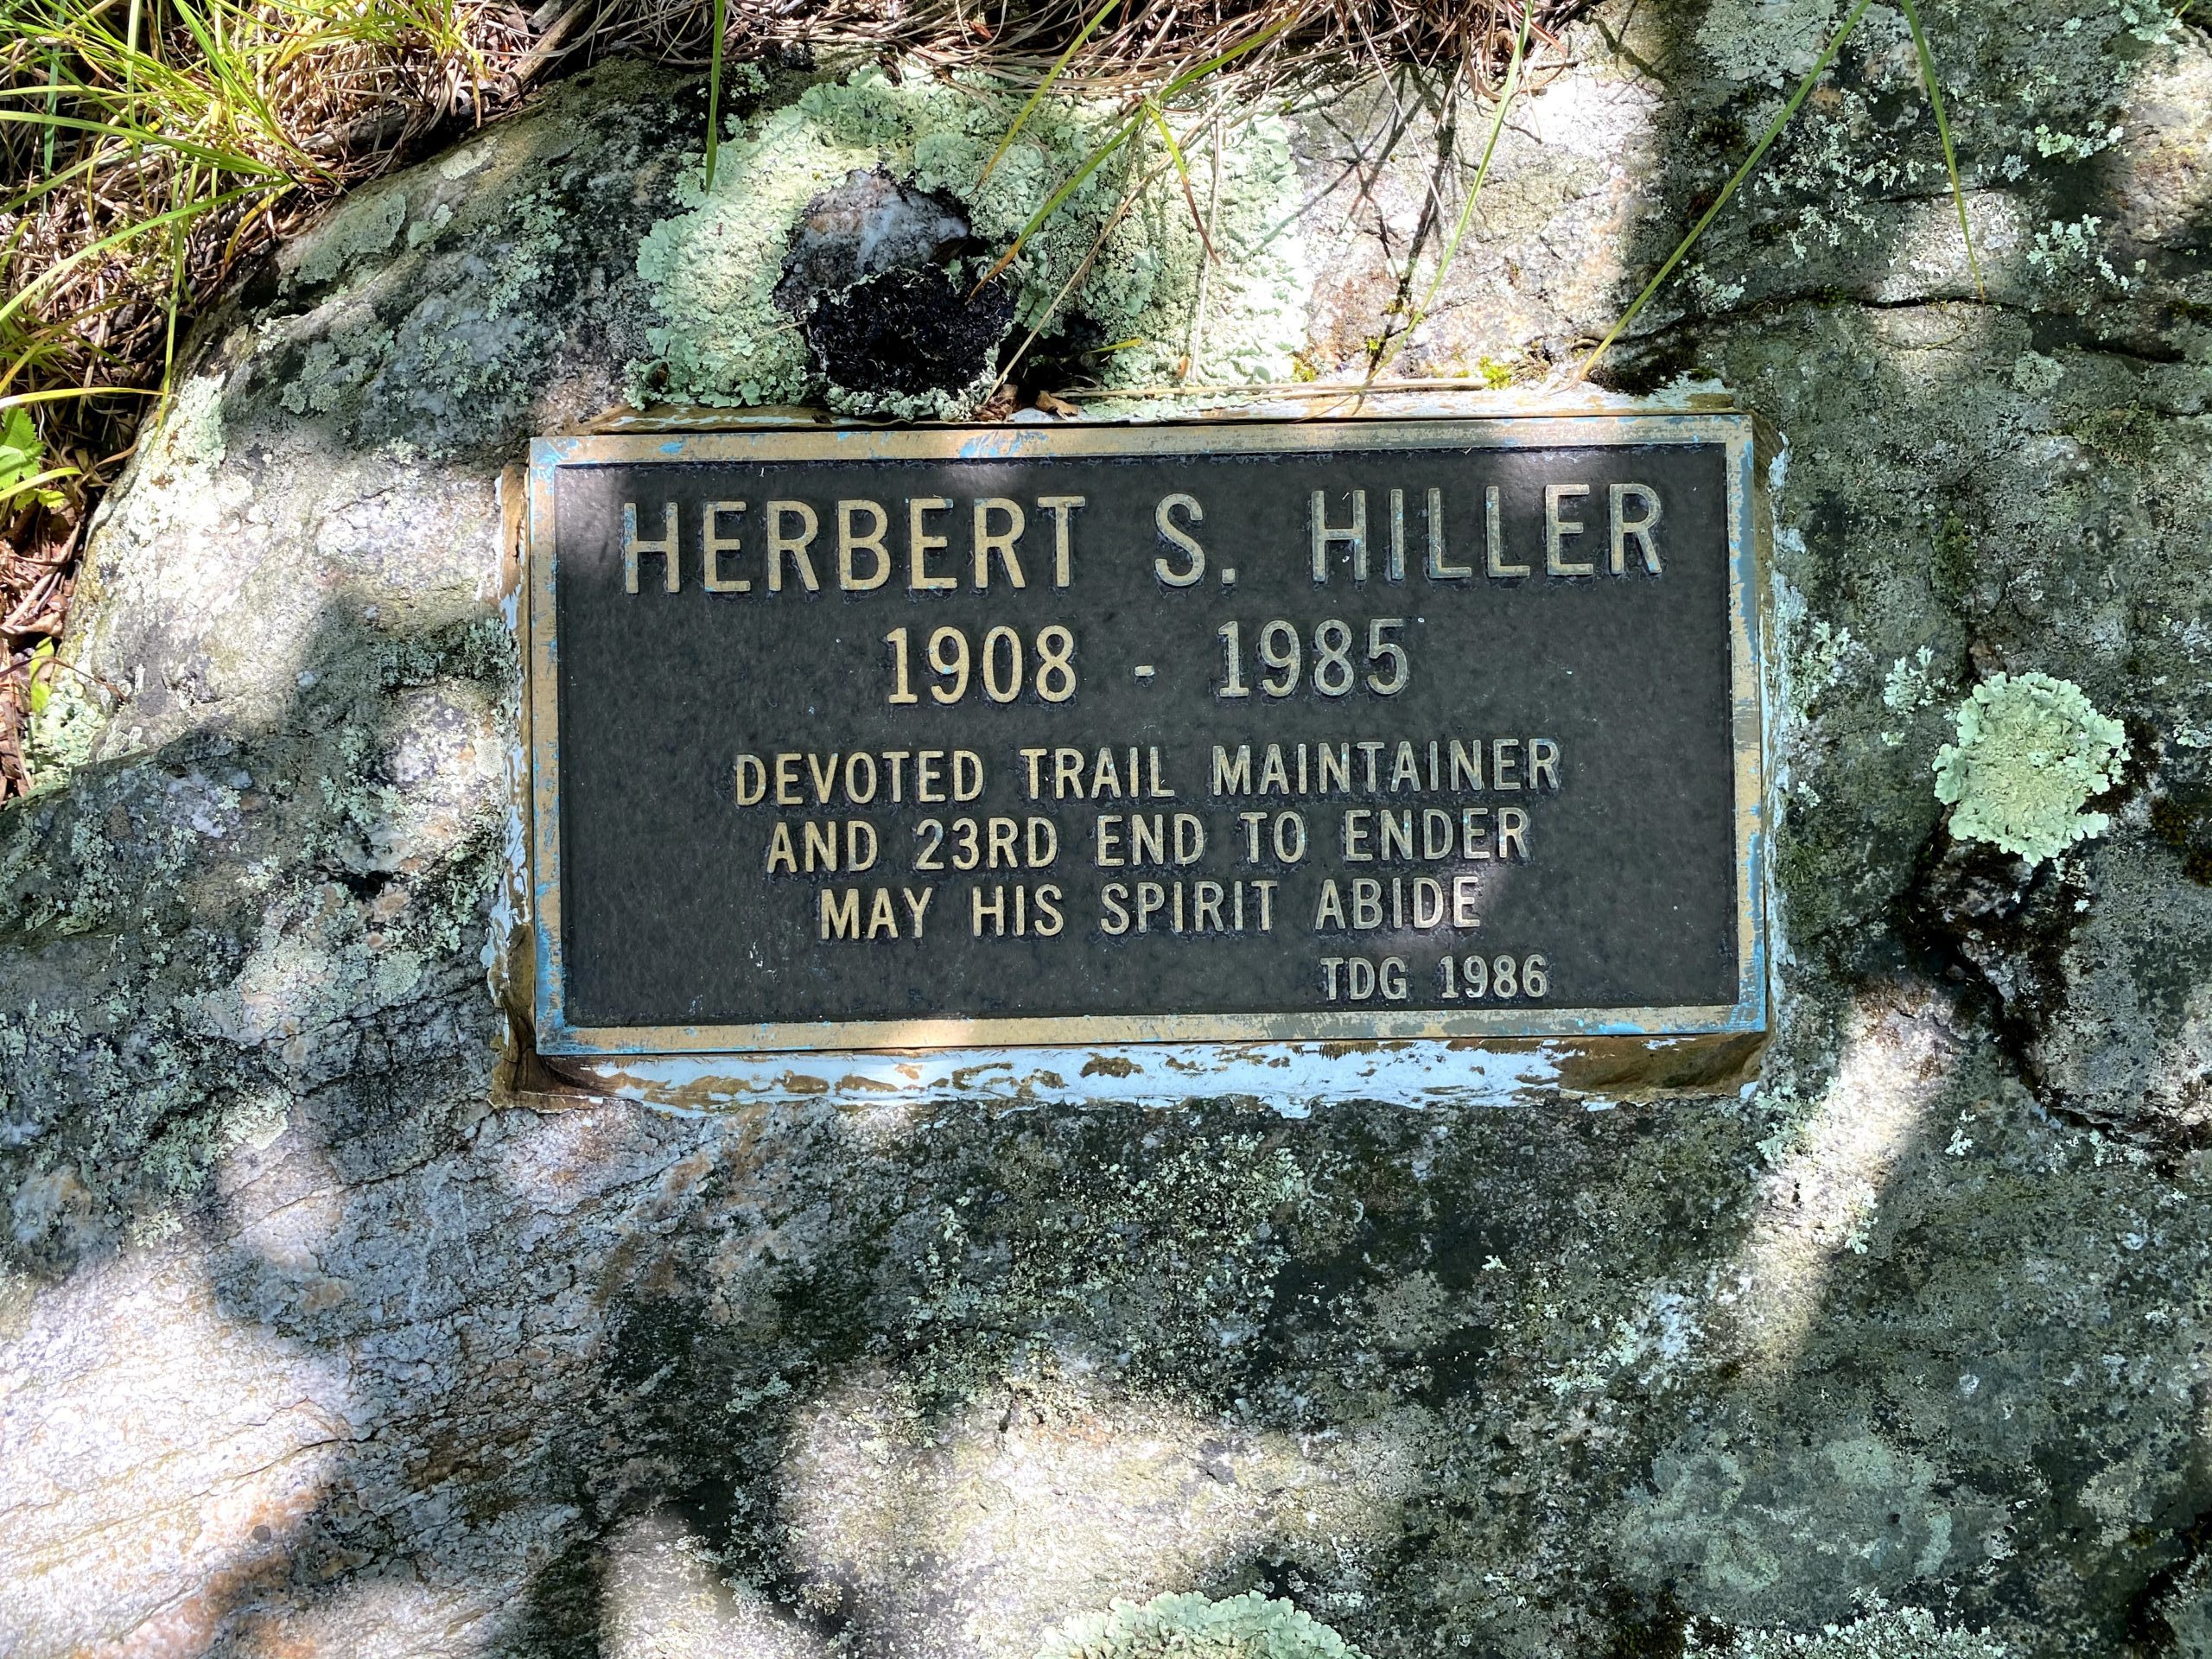 Herbert S. Hiller plaque